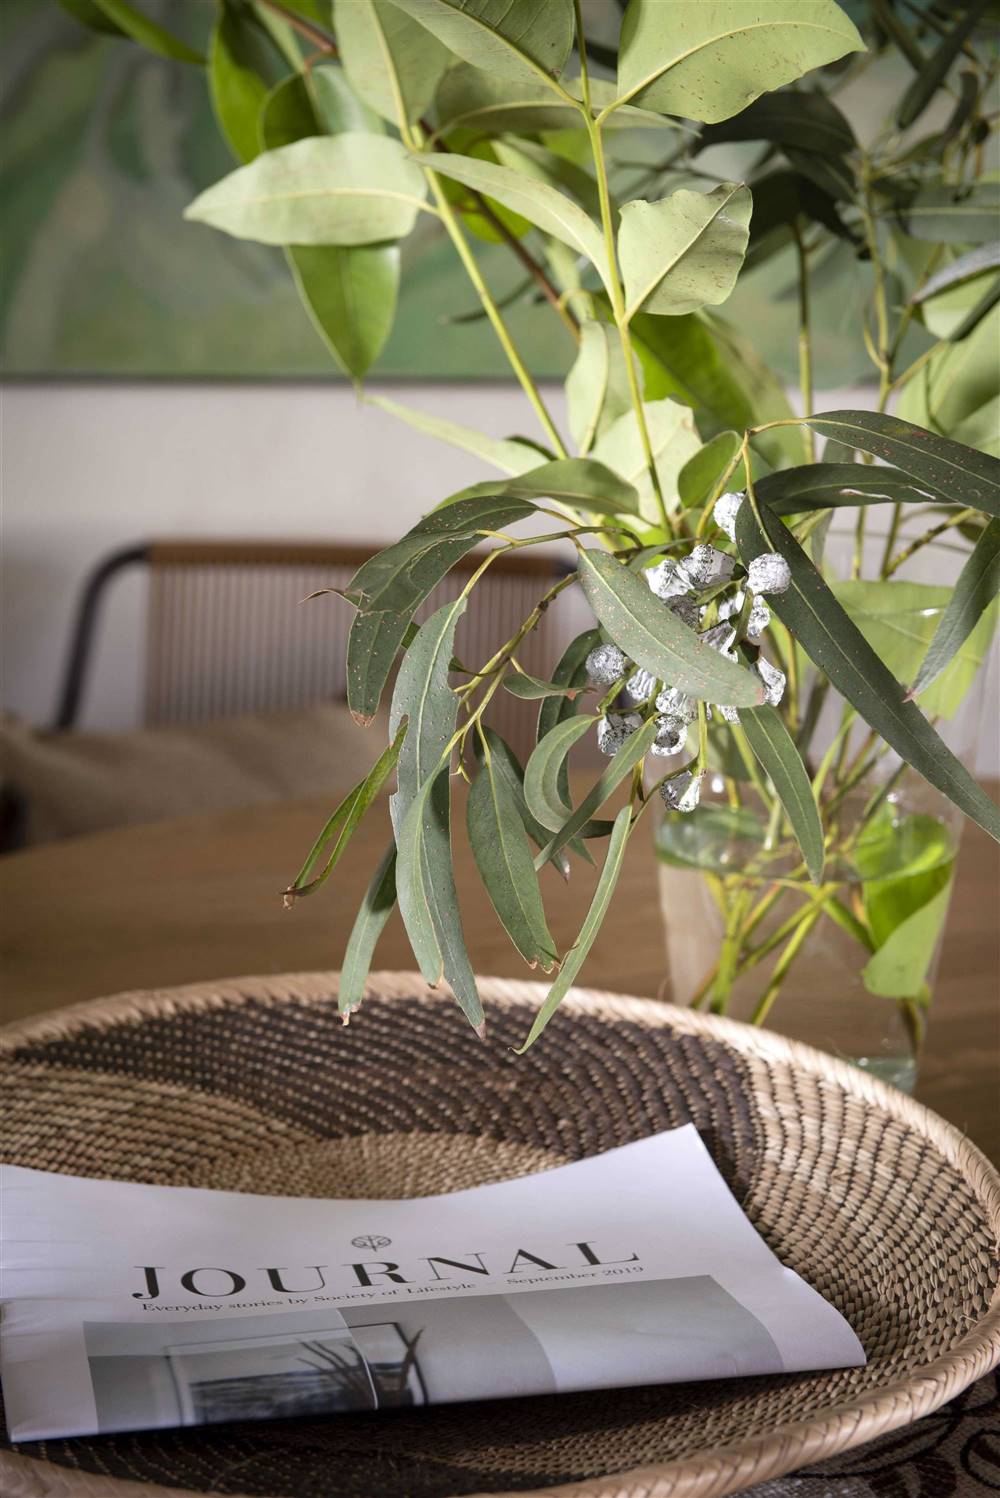 Herbicida casero con papel peridodico el mueble